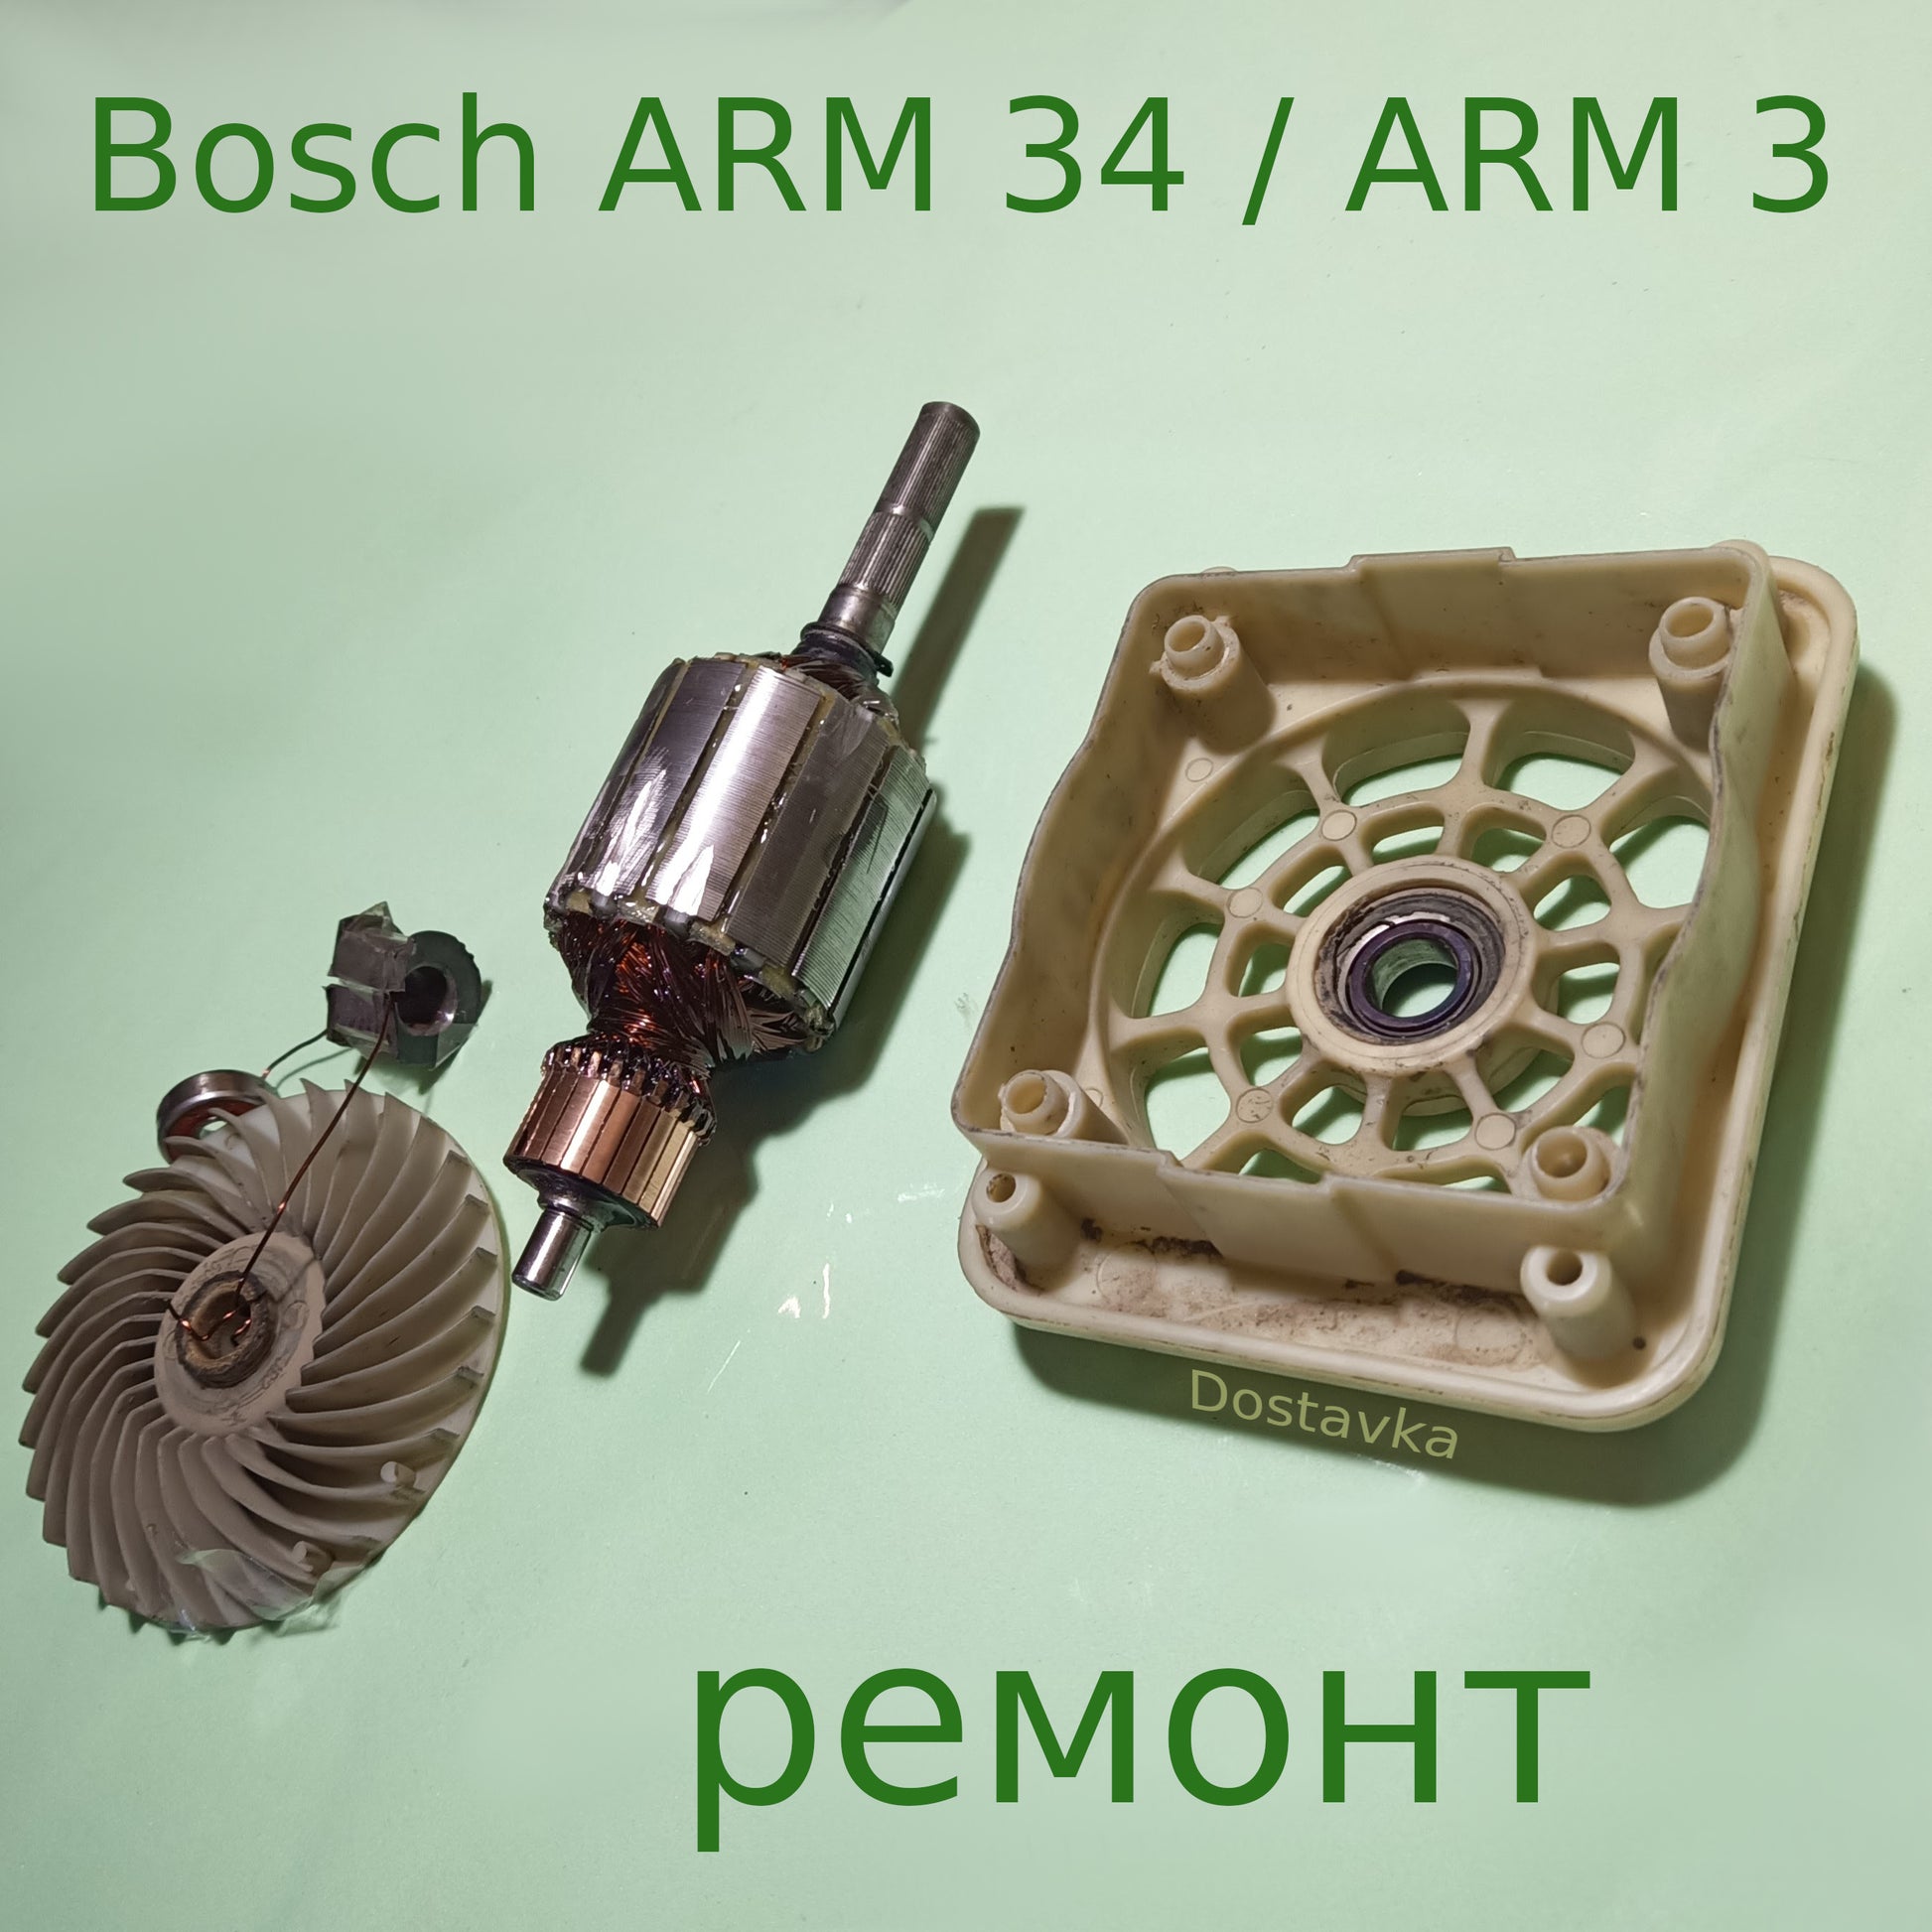 Bosch ARM 34 /ARM 3